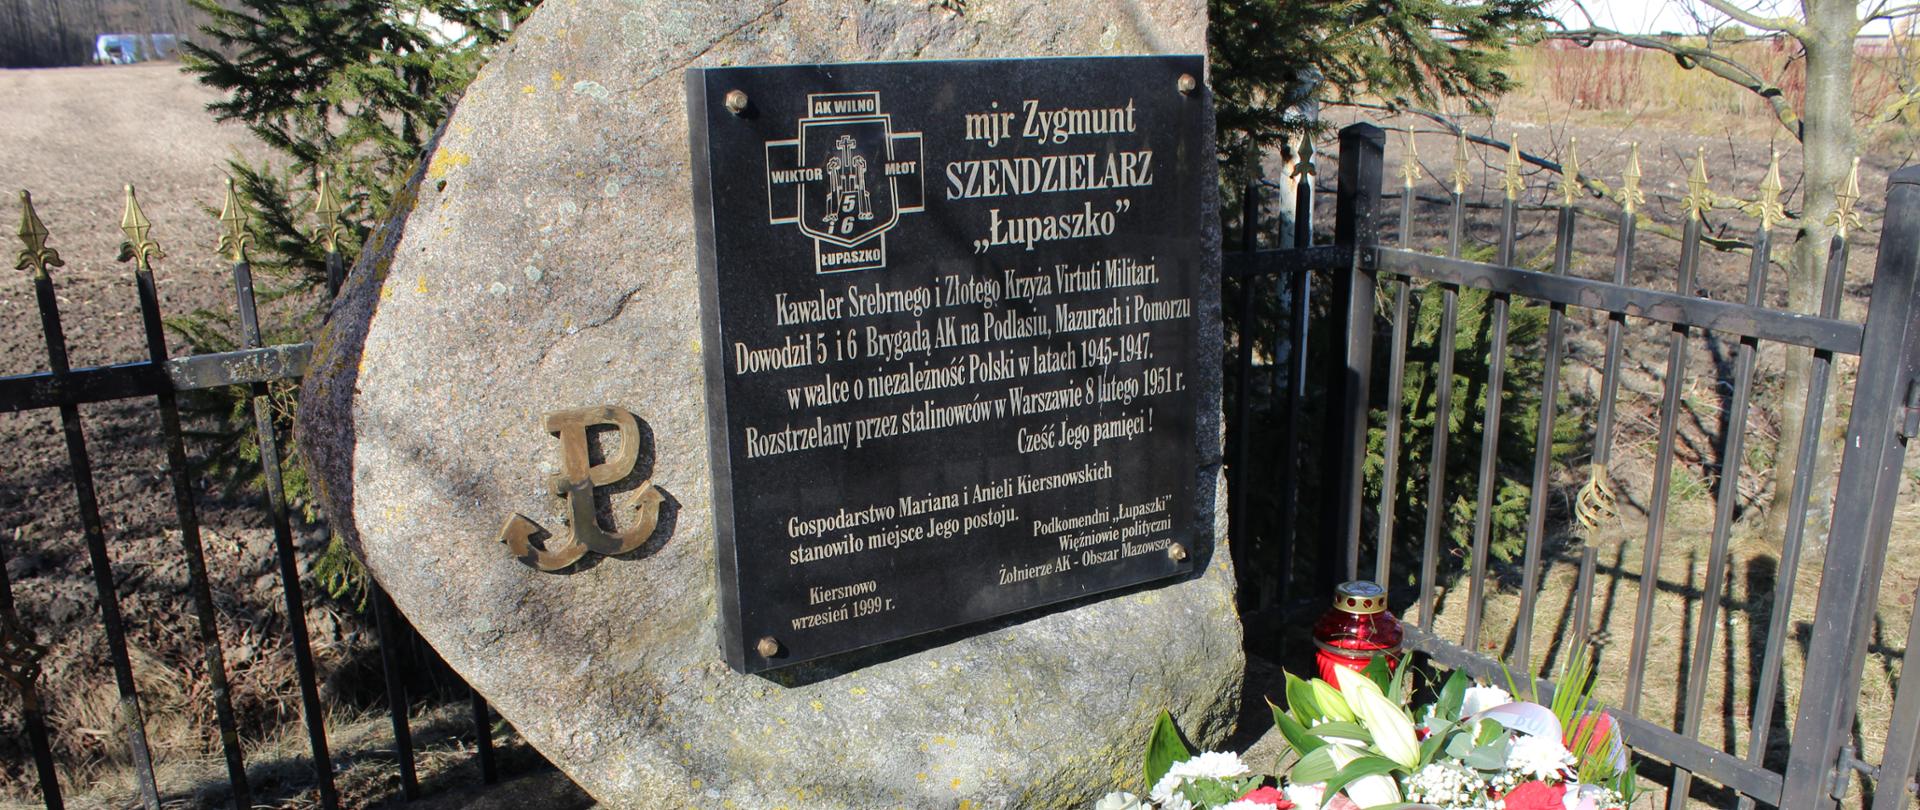 Tablica upamiętniająca mjr Zygmunta Szendzielarz "Łupaszko" w miejscowości Kiersnowo